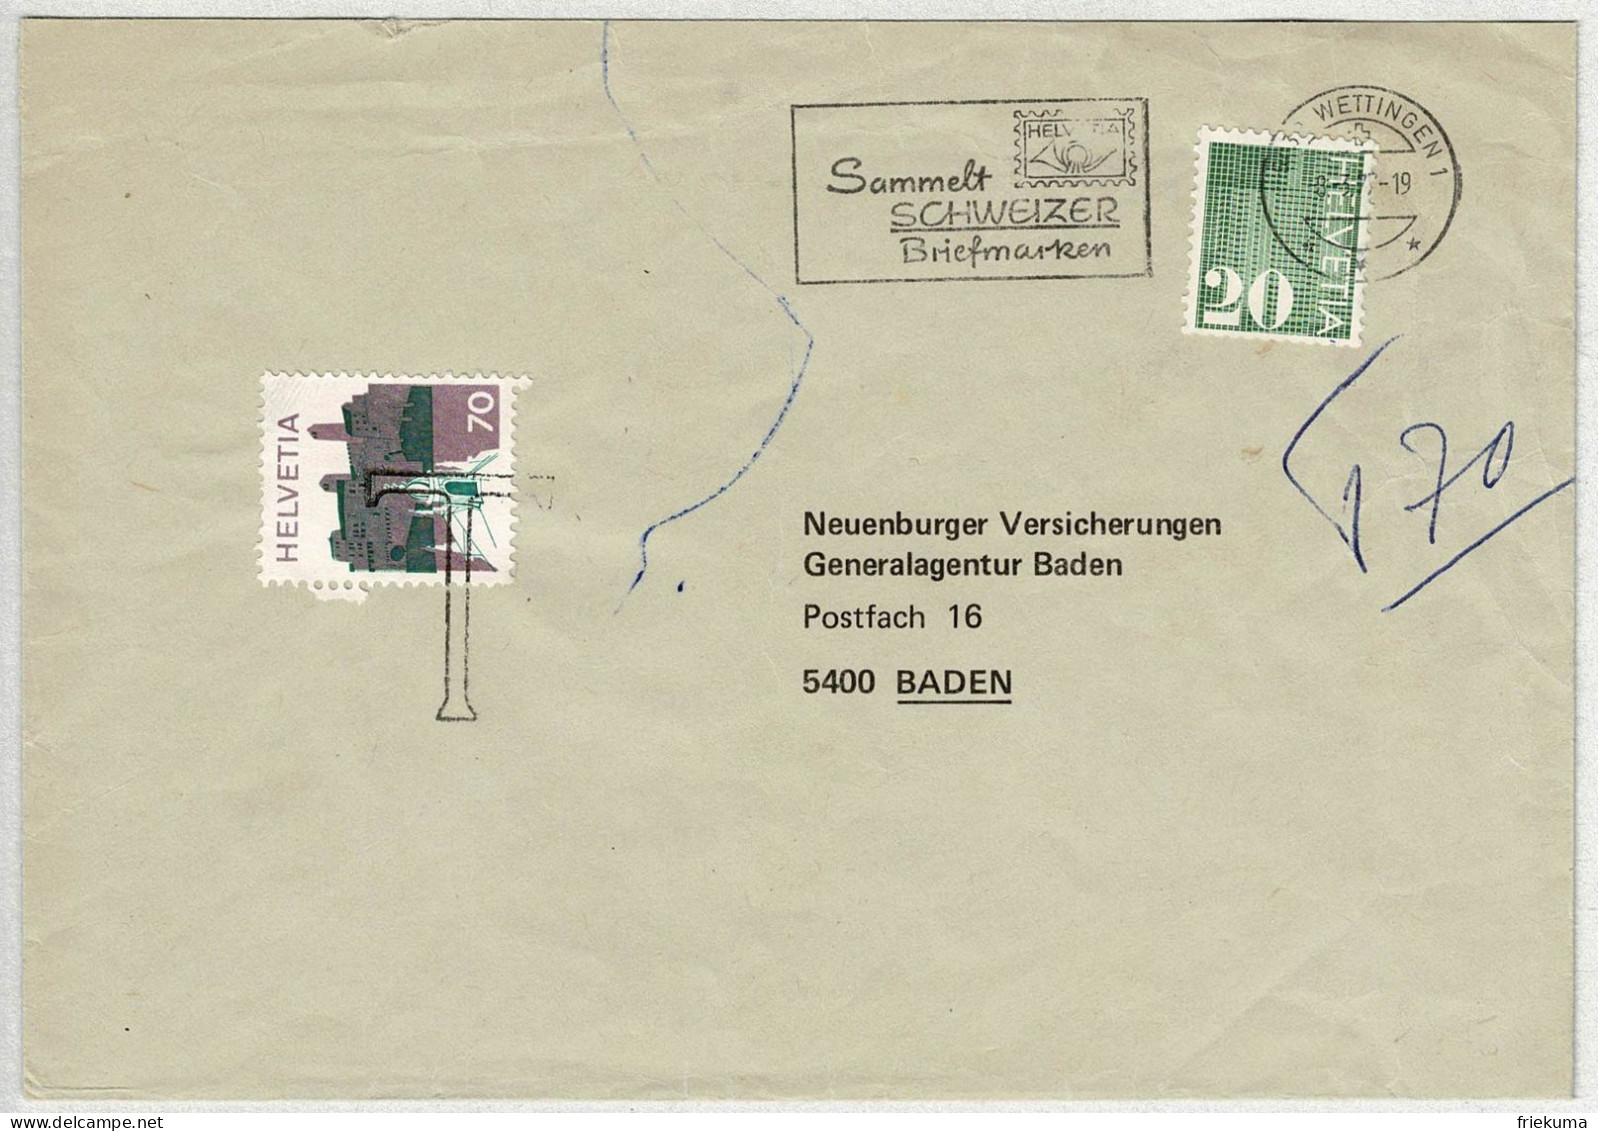 Schweiz 1977, Brief Wettingen - Baden, Automatenmarke, Nachtaxiert Landschaftsbilder - Briefe U. Dokumente